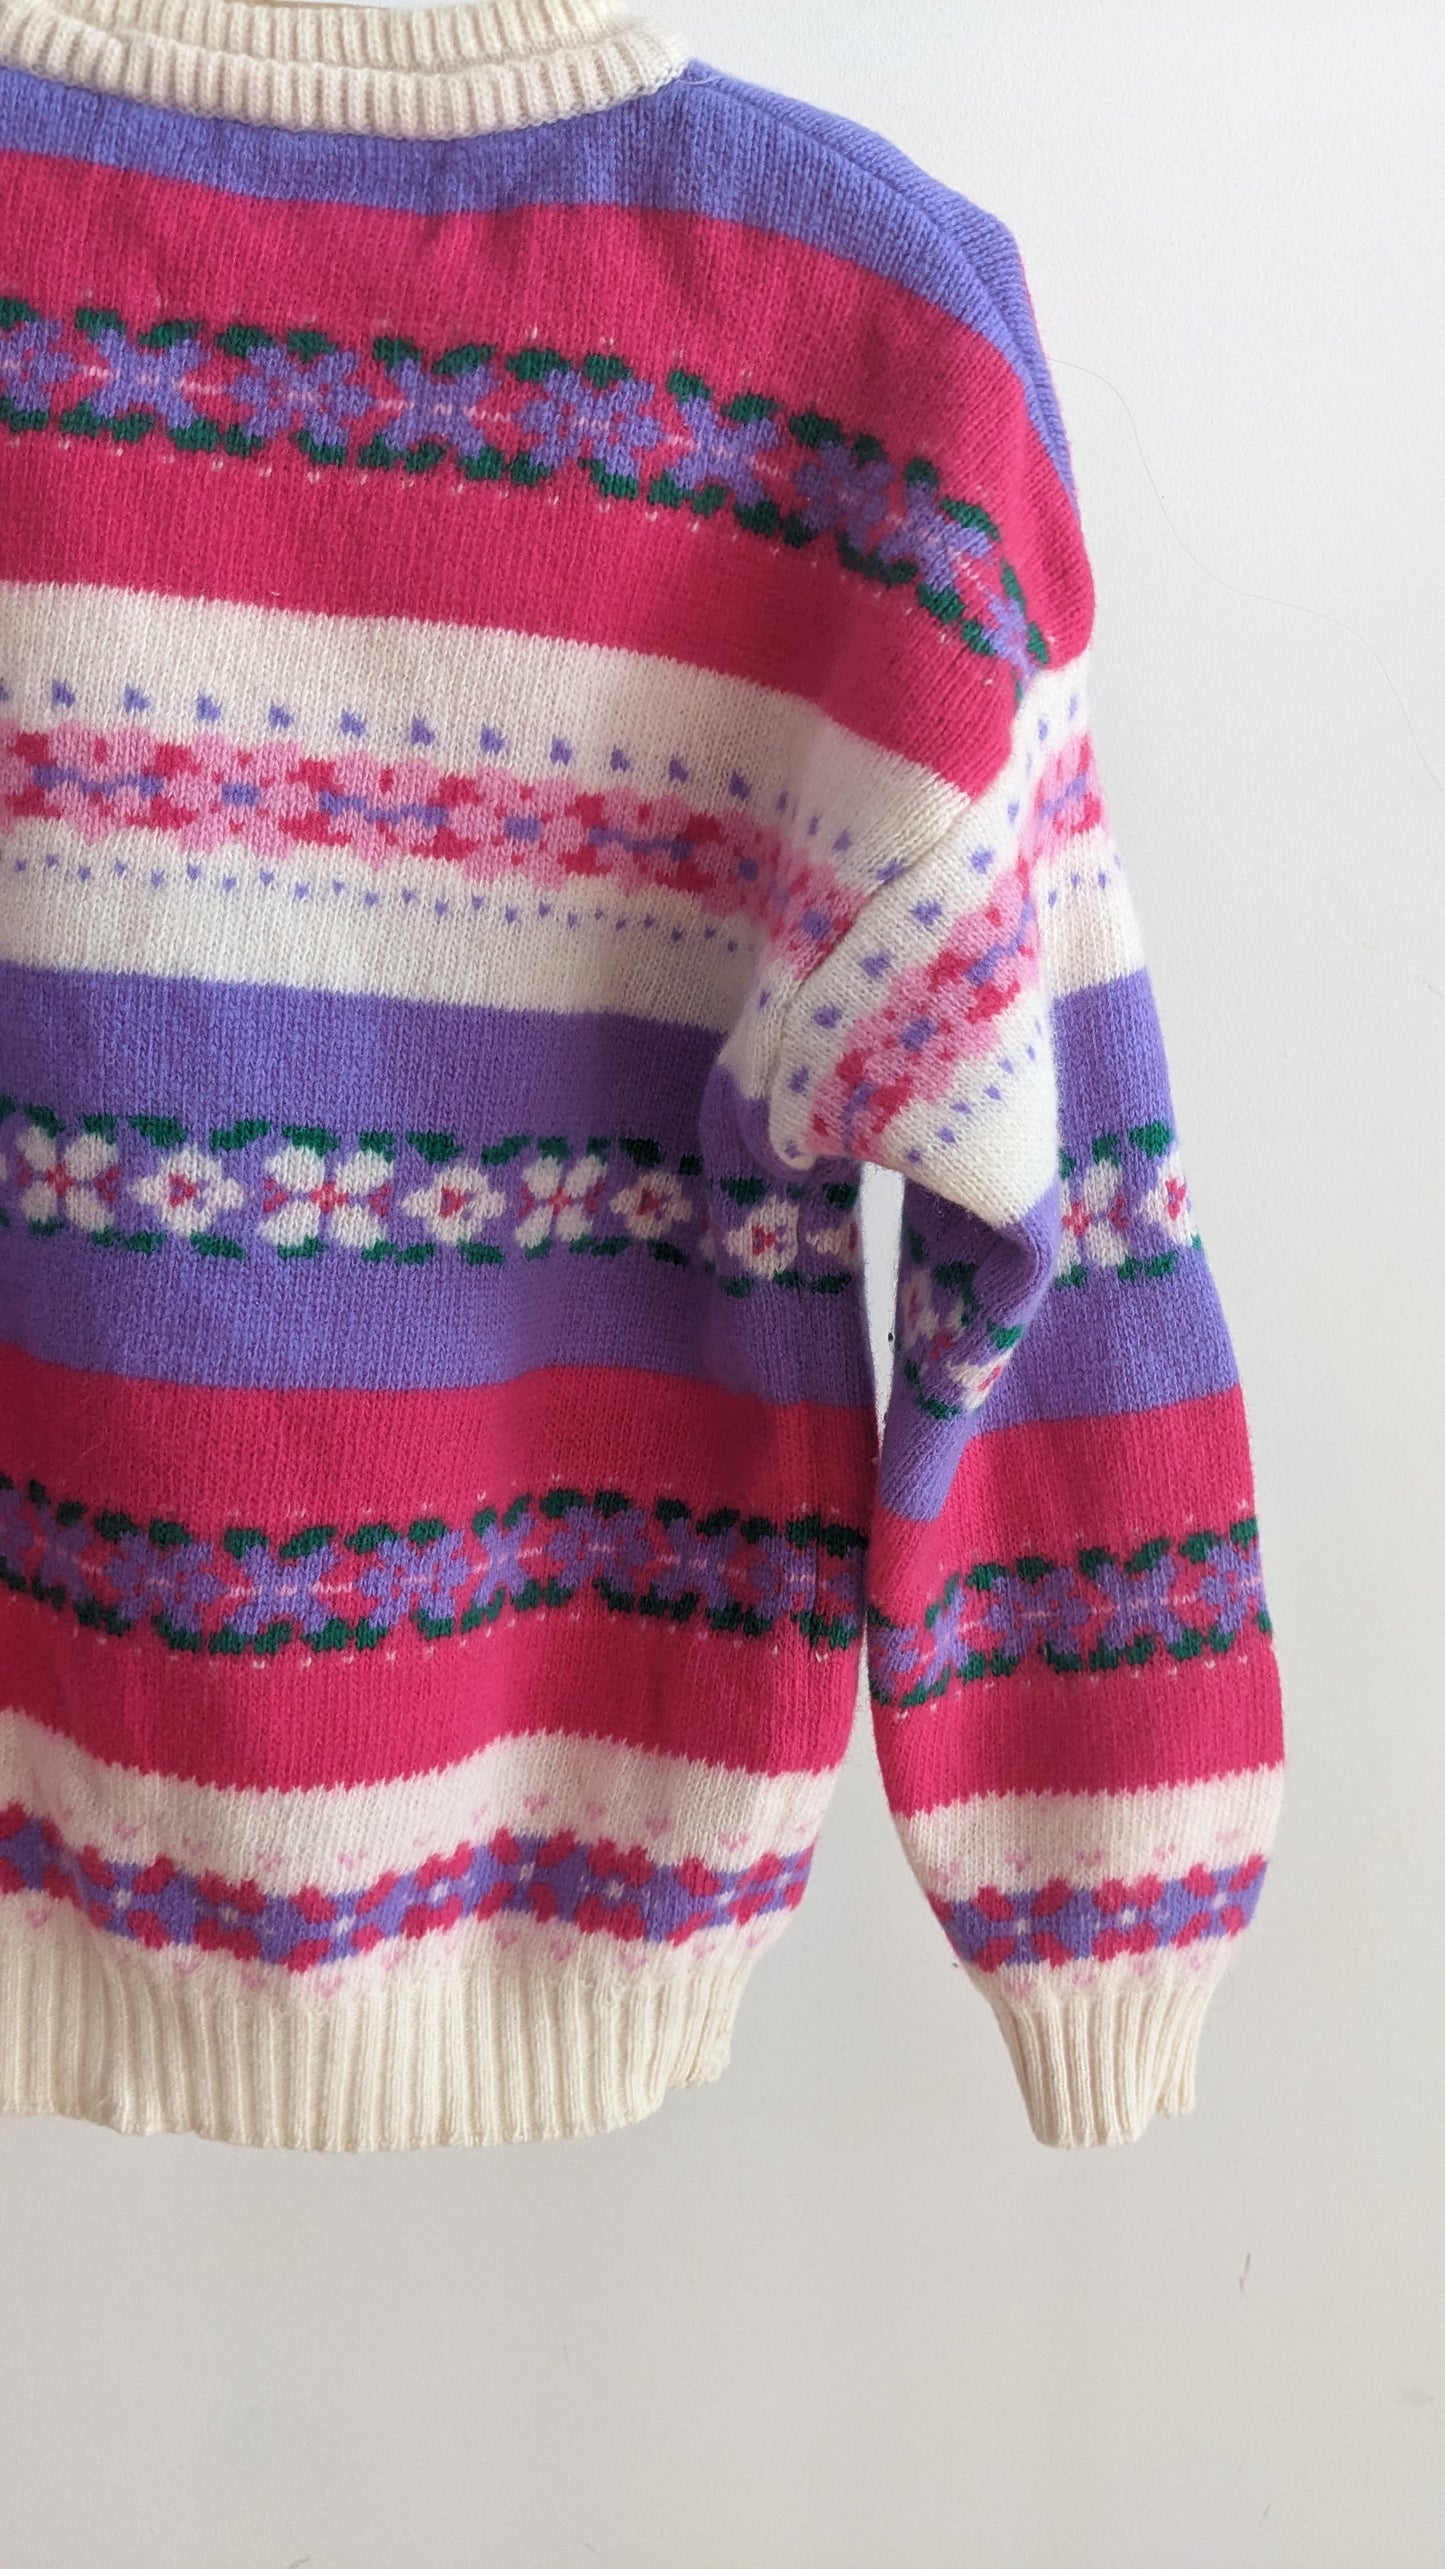 Benetton fair isle striped wool sweater